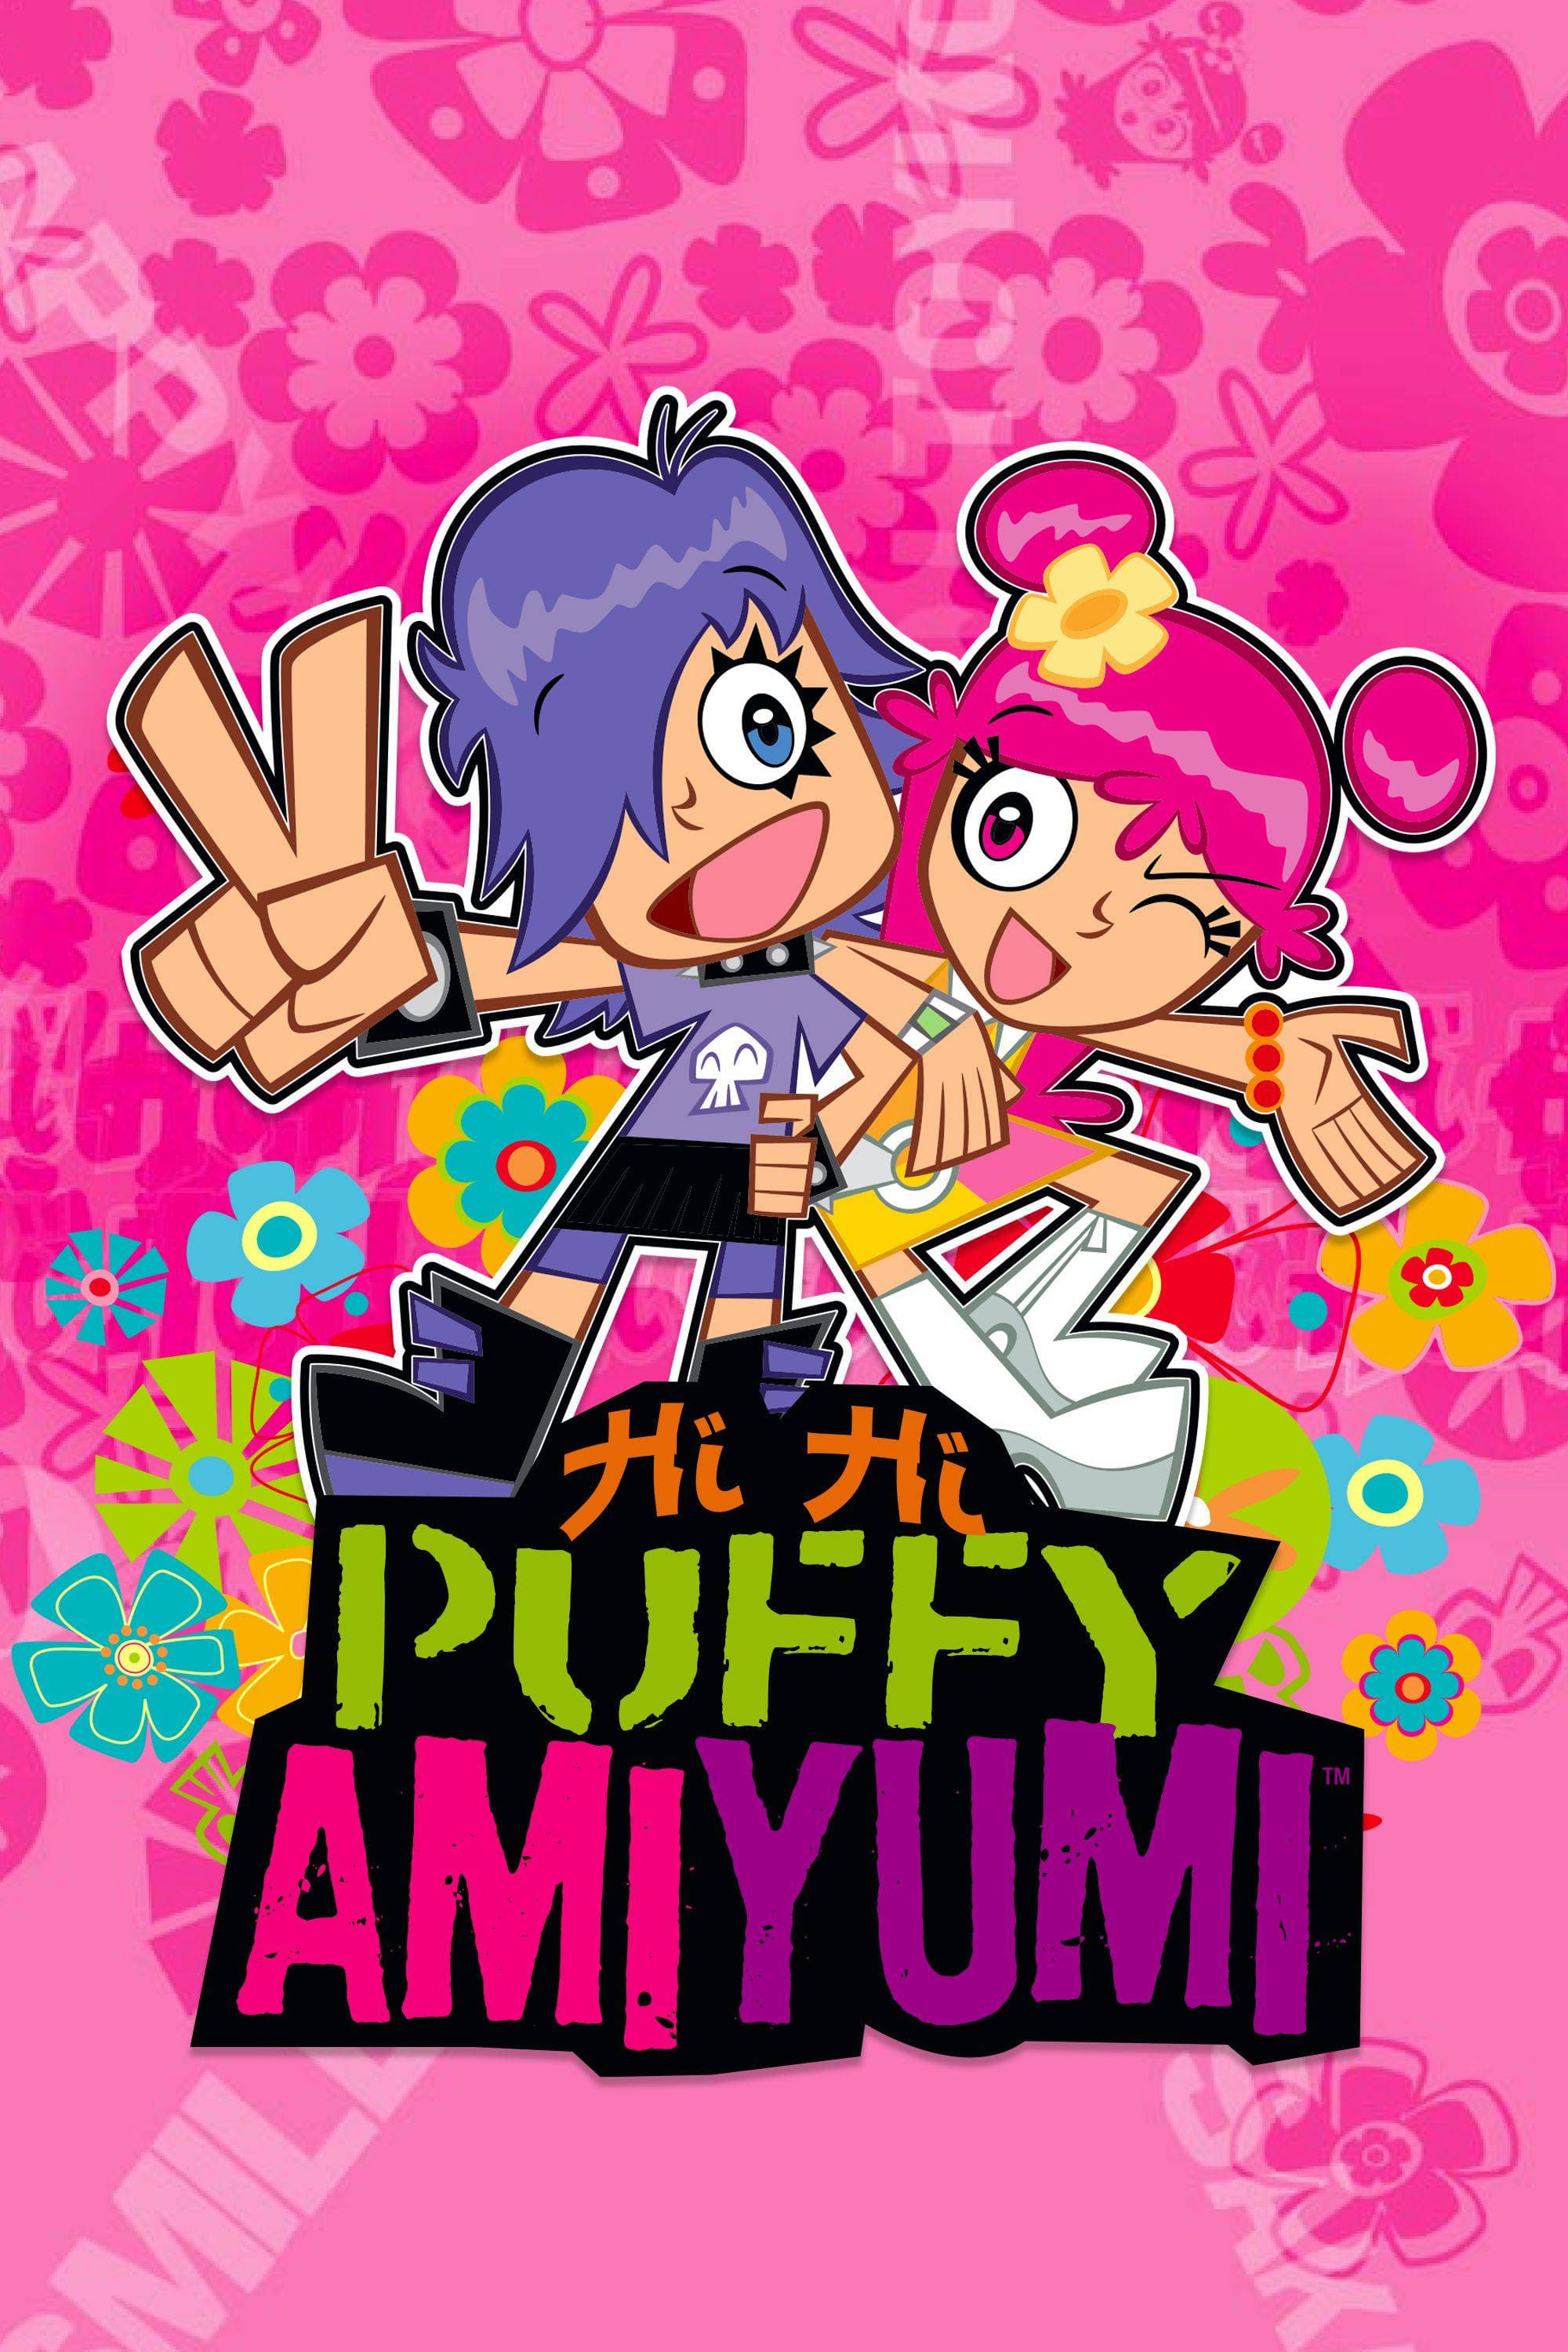 Hi Hi Puffy Amiyumi The Dubbing Database Fandom